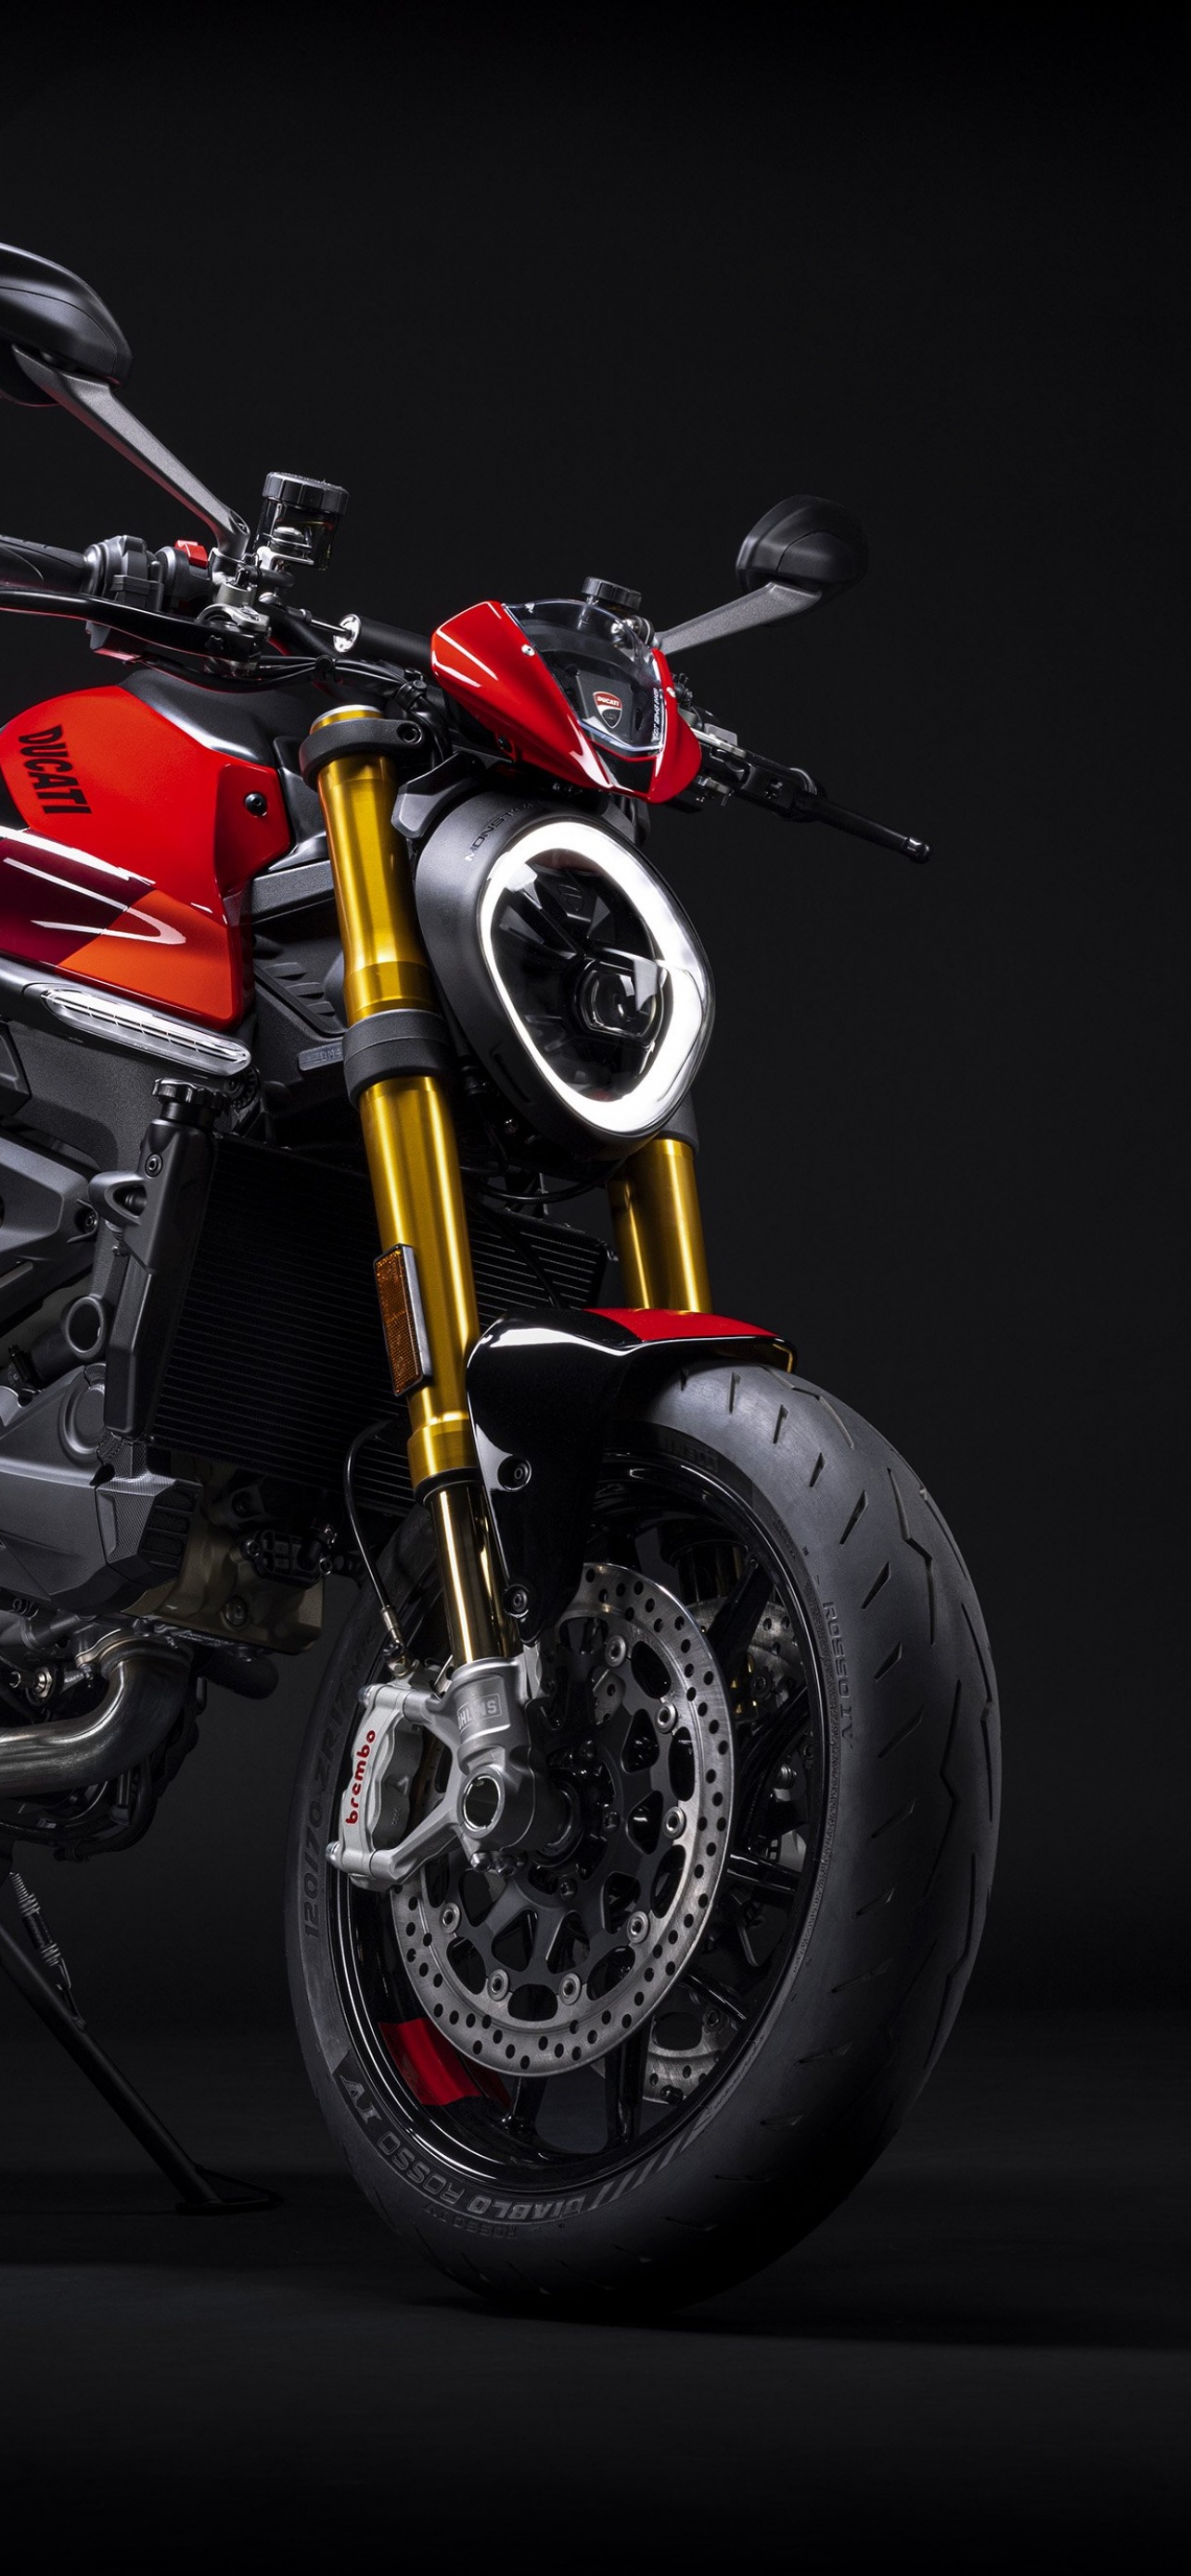 Đối với những người yêu môtô, Ducati Monster không chỉ là một chiếc xe mà còn là một biểu tượng của tinh thần phiêu lưu. Với bức hình này, bạn sẽ cảm nhận được nhịp đập của các đường nét, từ khung sườn đến động cơ, và sẽ thực sự muốn sở hữu nó.